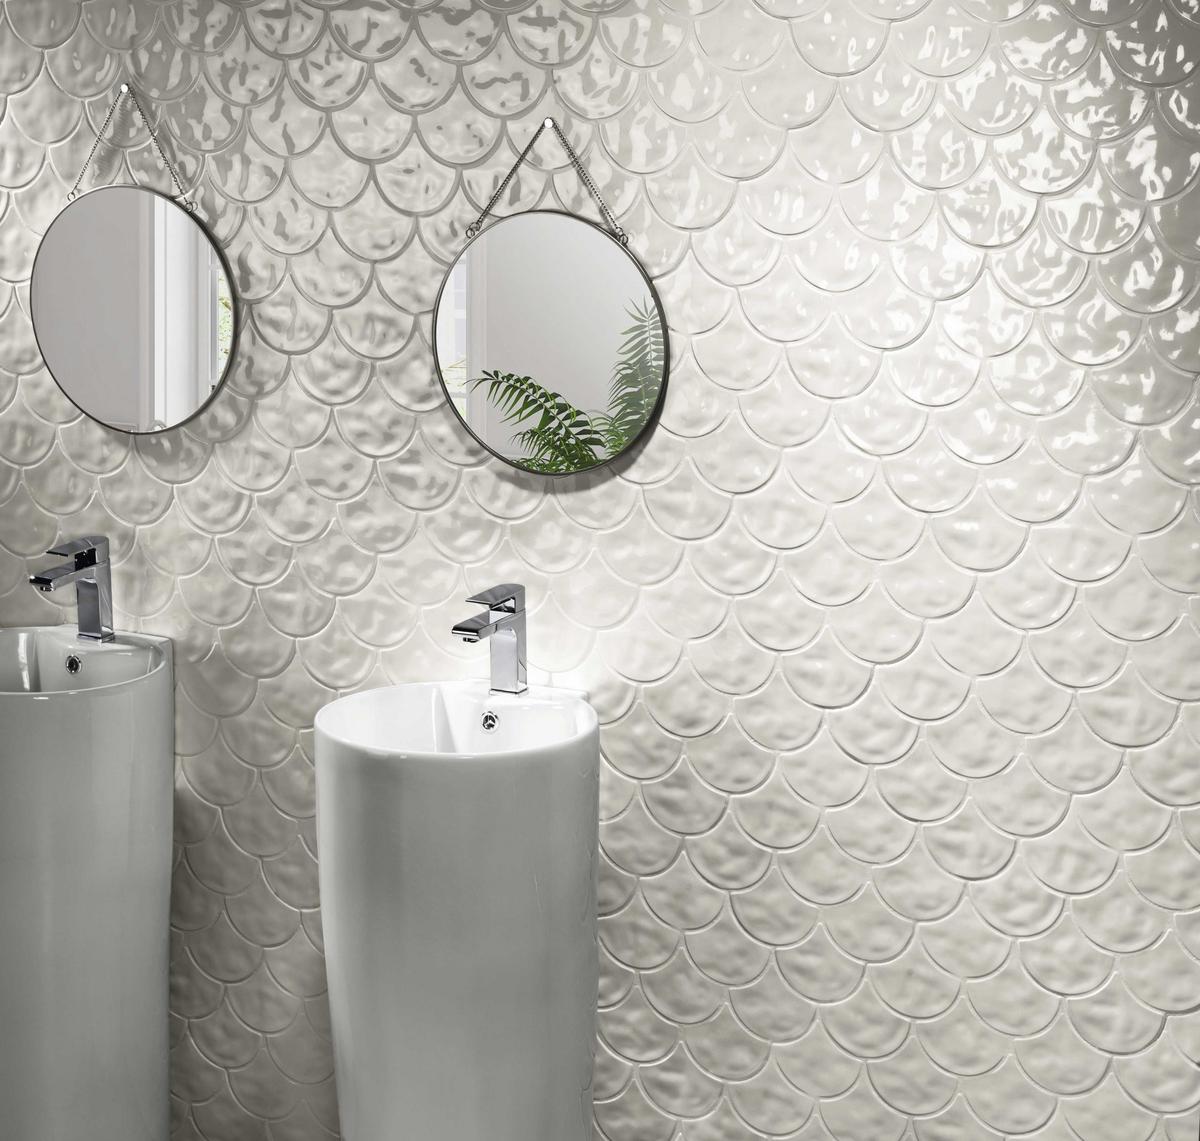 Carrelage uni blanc avec relief ondulé 30x30 cm dans une salle de bain moderne murs gris clair avec deux lavabos ronds et miroirs circulaires